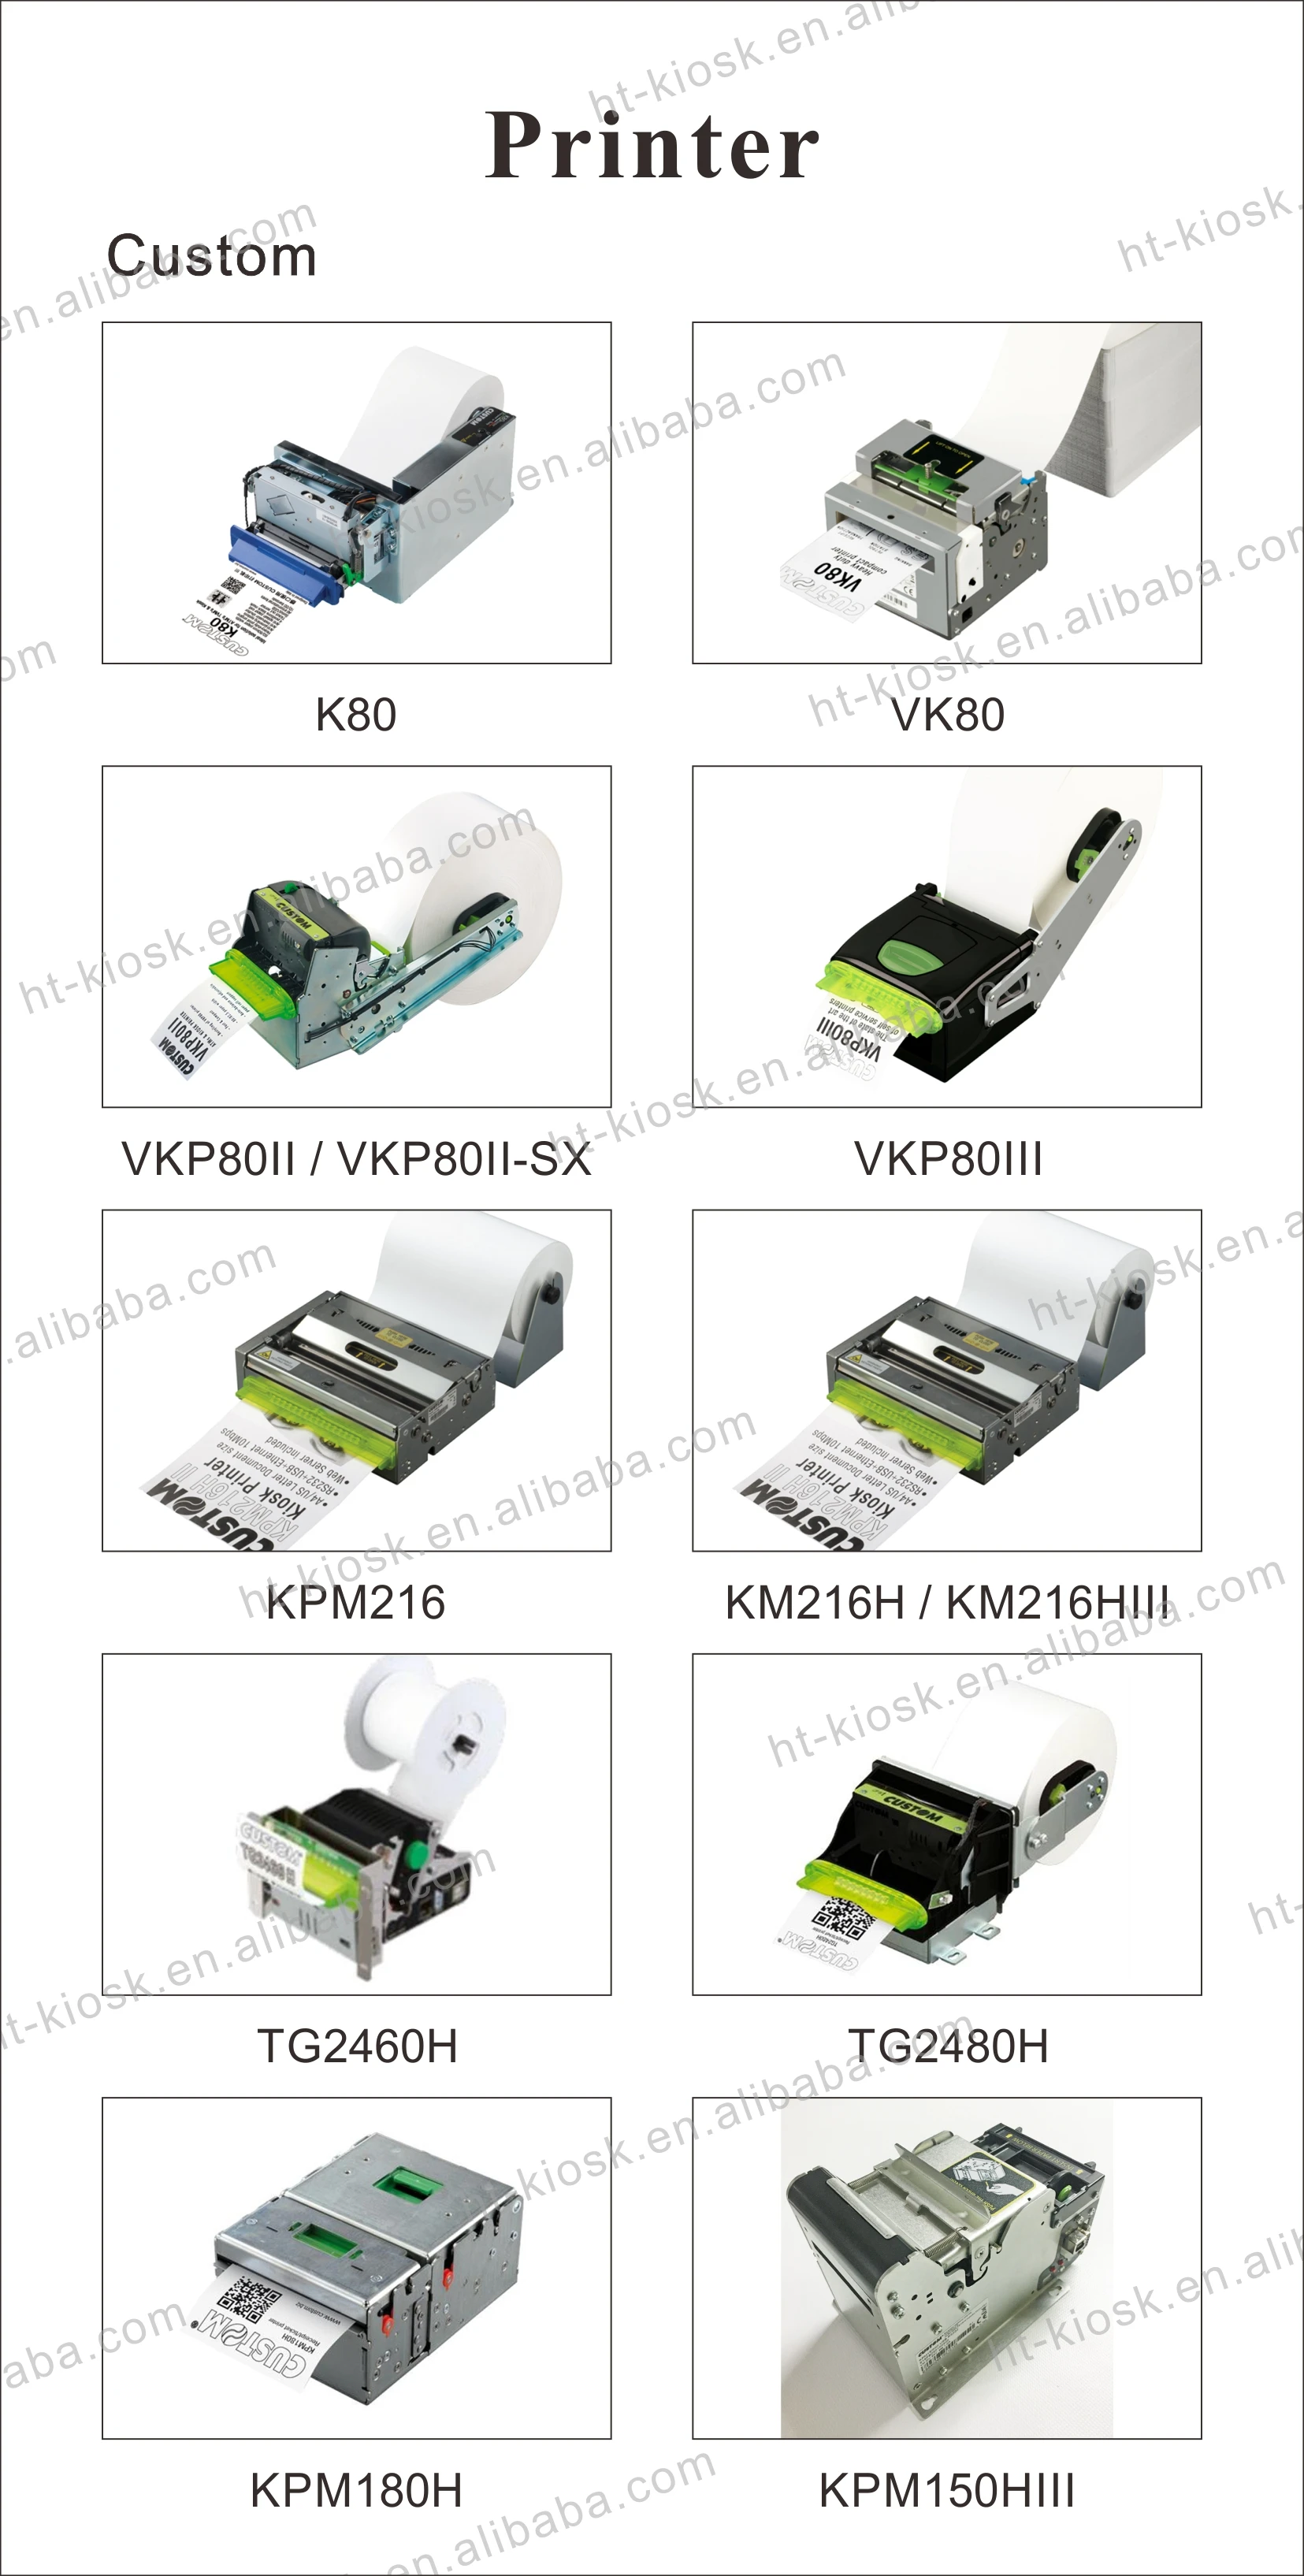 Kiosk Module Custom Printer All Models K80 Vk80 Tg2480 Kpm180h 216h Inner Installation Buy Kiosk Module Custom Printer All Models K80 Vk80 Tg2480 Kpm180h 216h Inner Installation Product On Alibaba Com